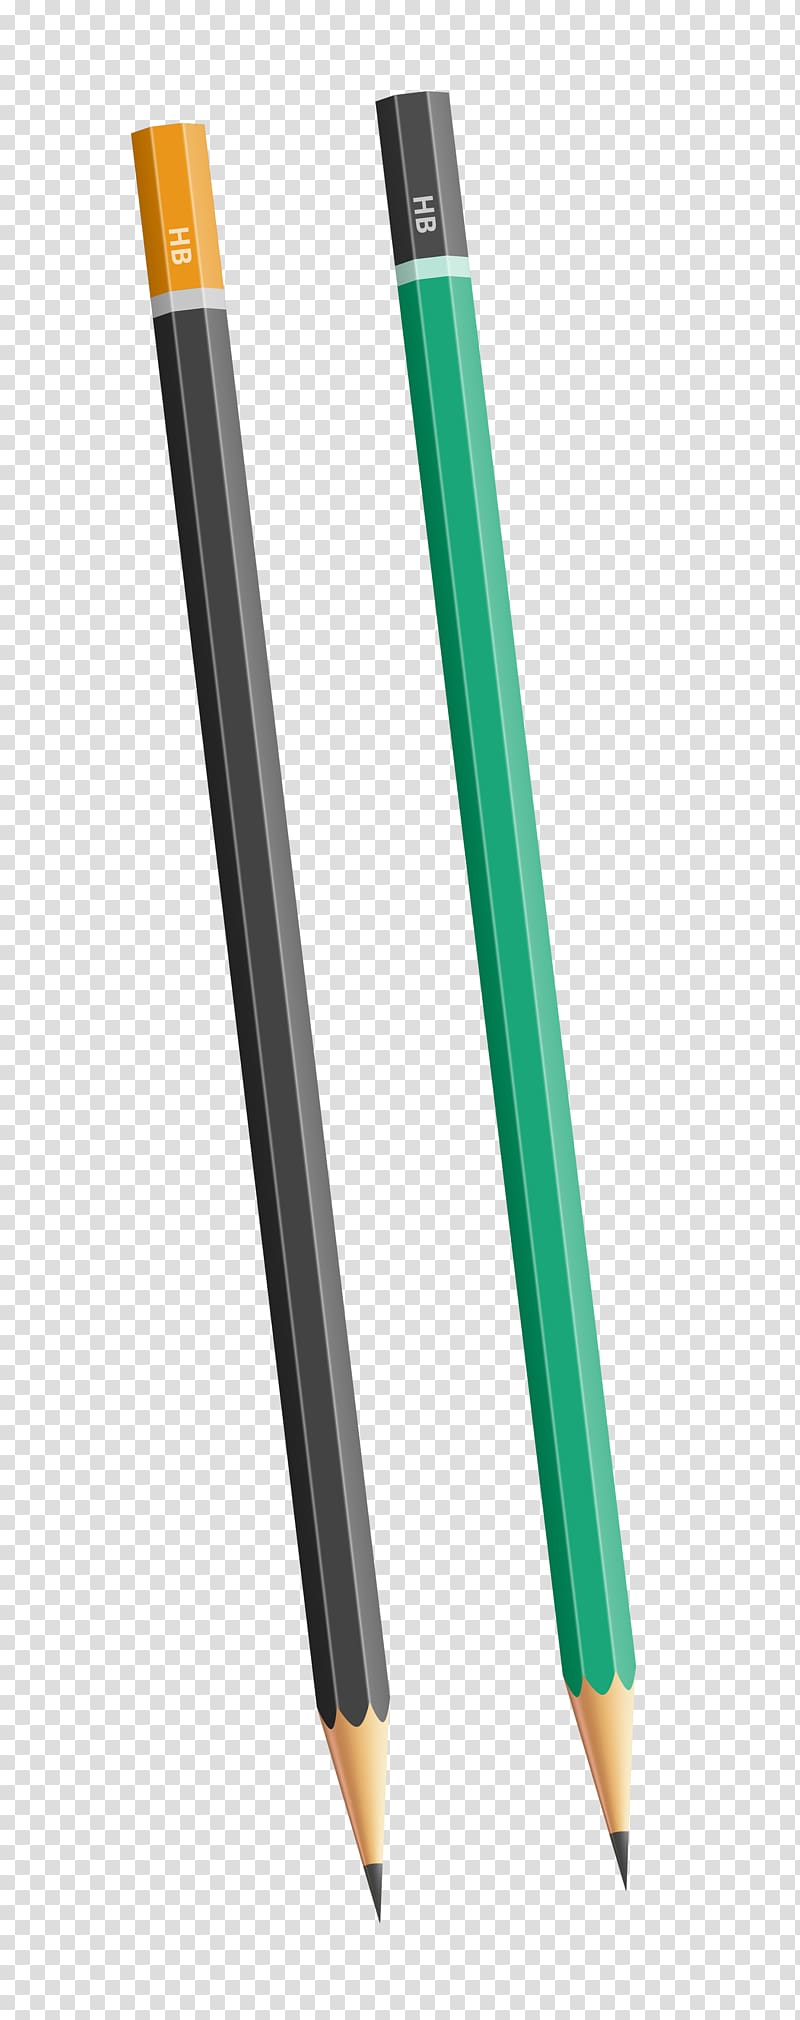 black and green pencils, Pencil Idea , HB Pencils transparent background PNG clipart